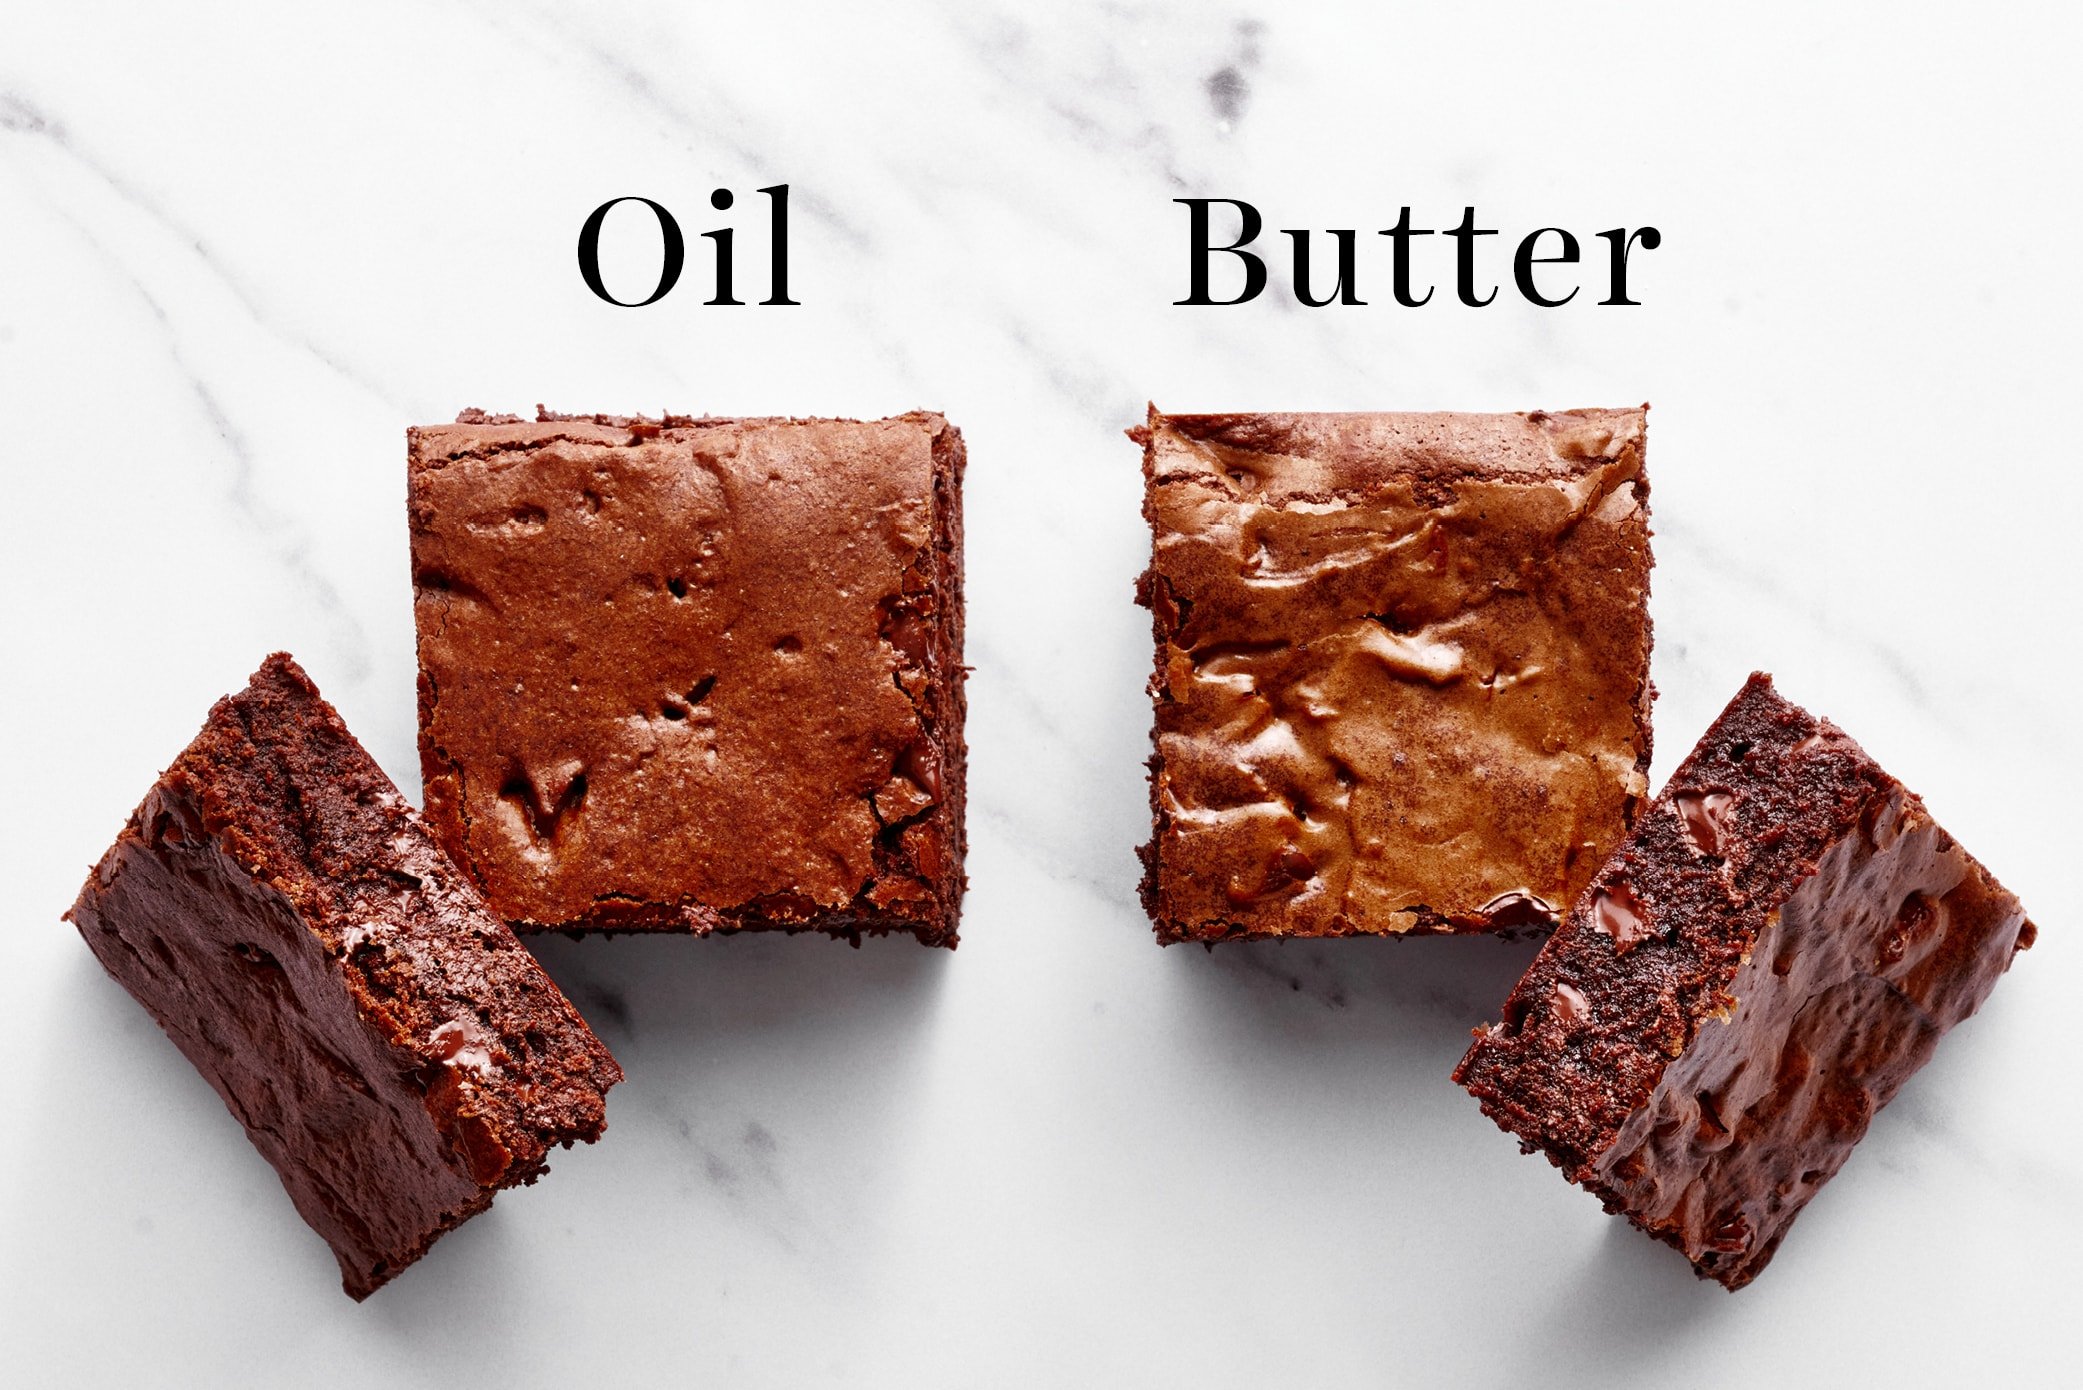 Butter vs. Oil in Baking